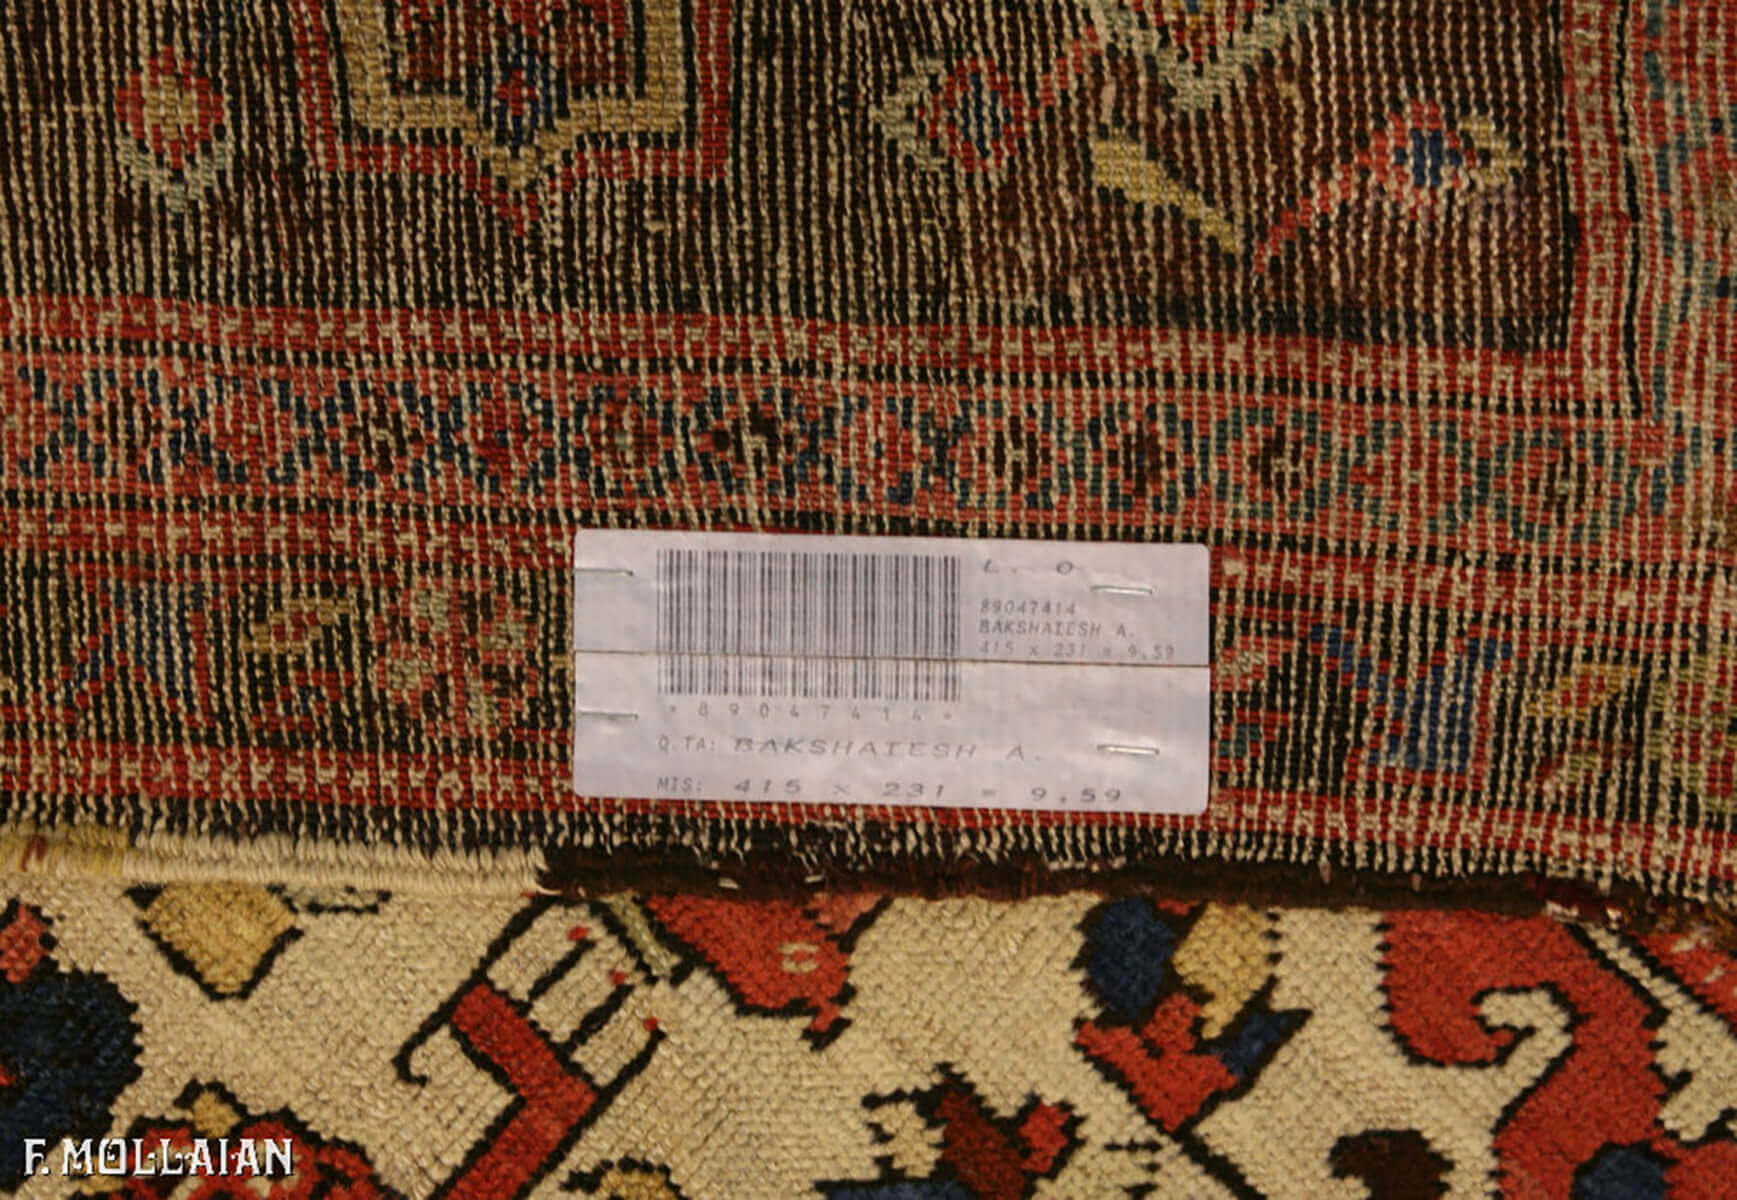 Tappeto Persiano Antico Bakshaish n°:89047414